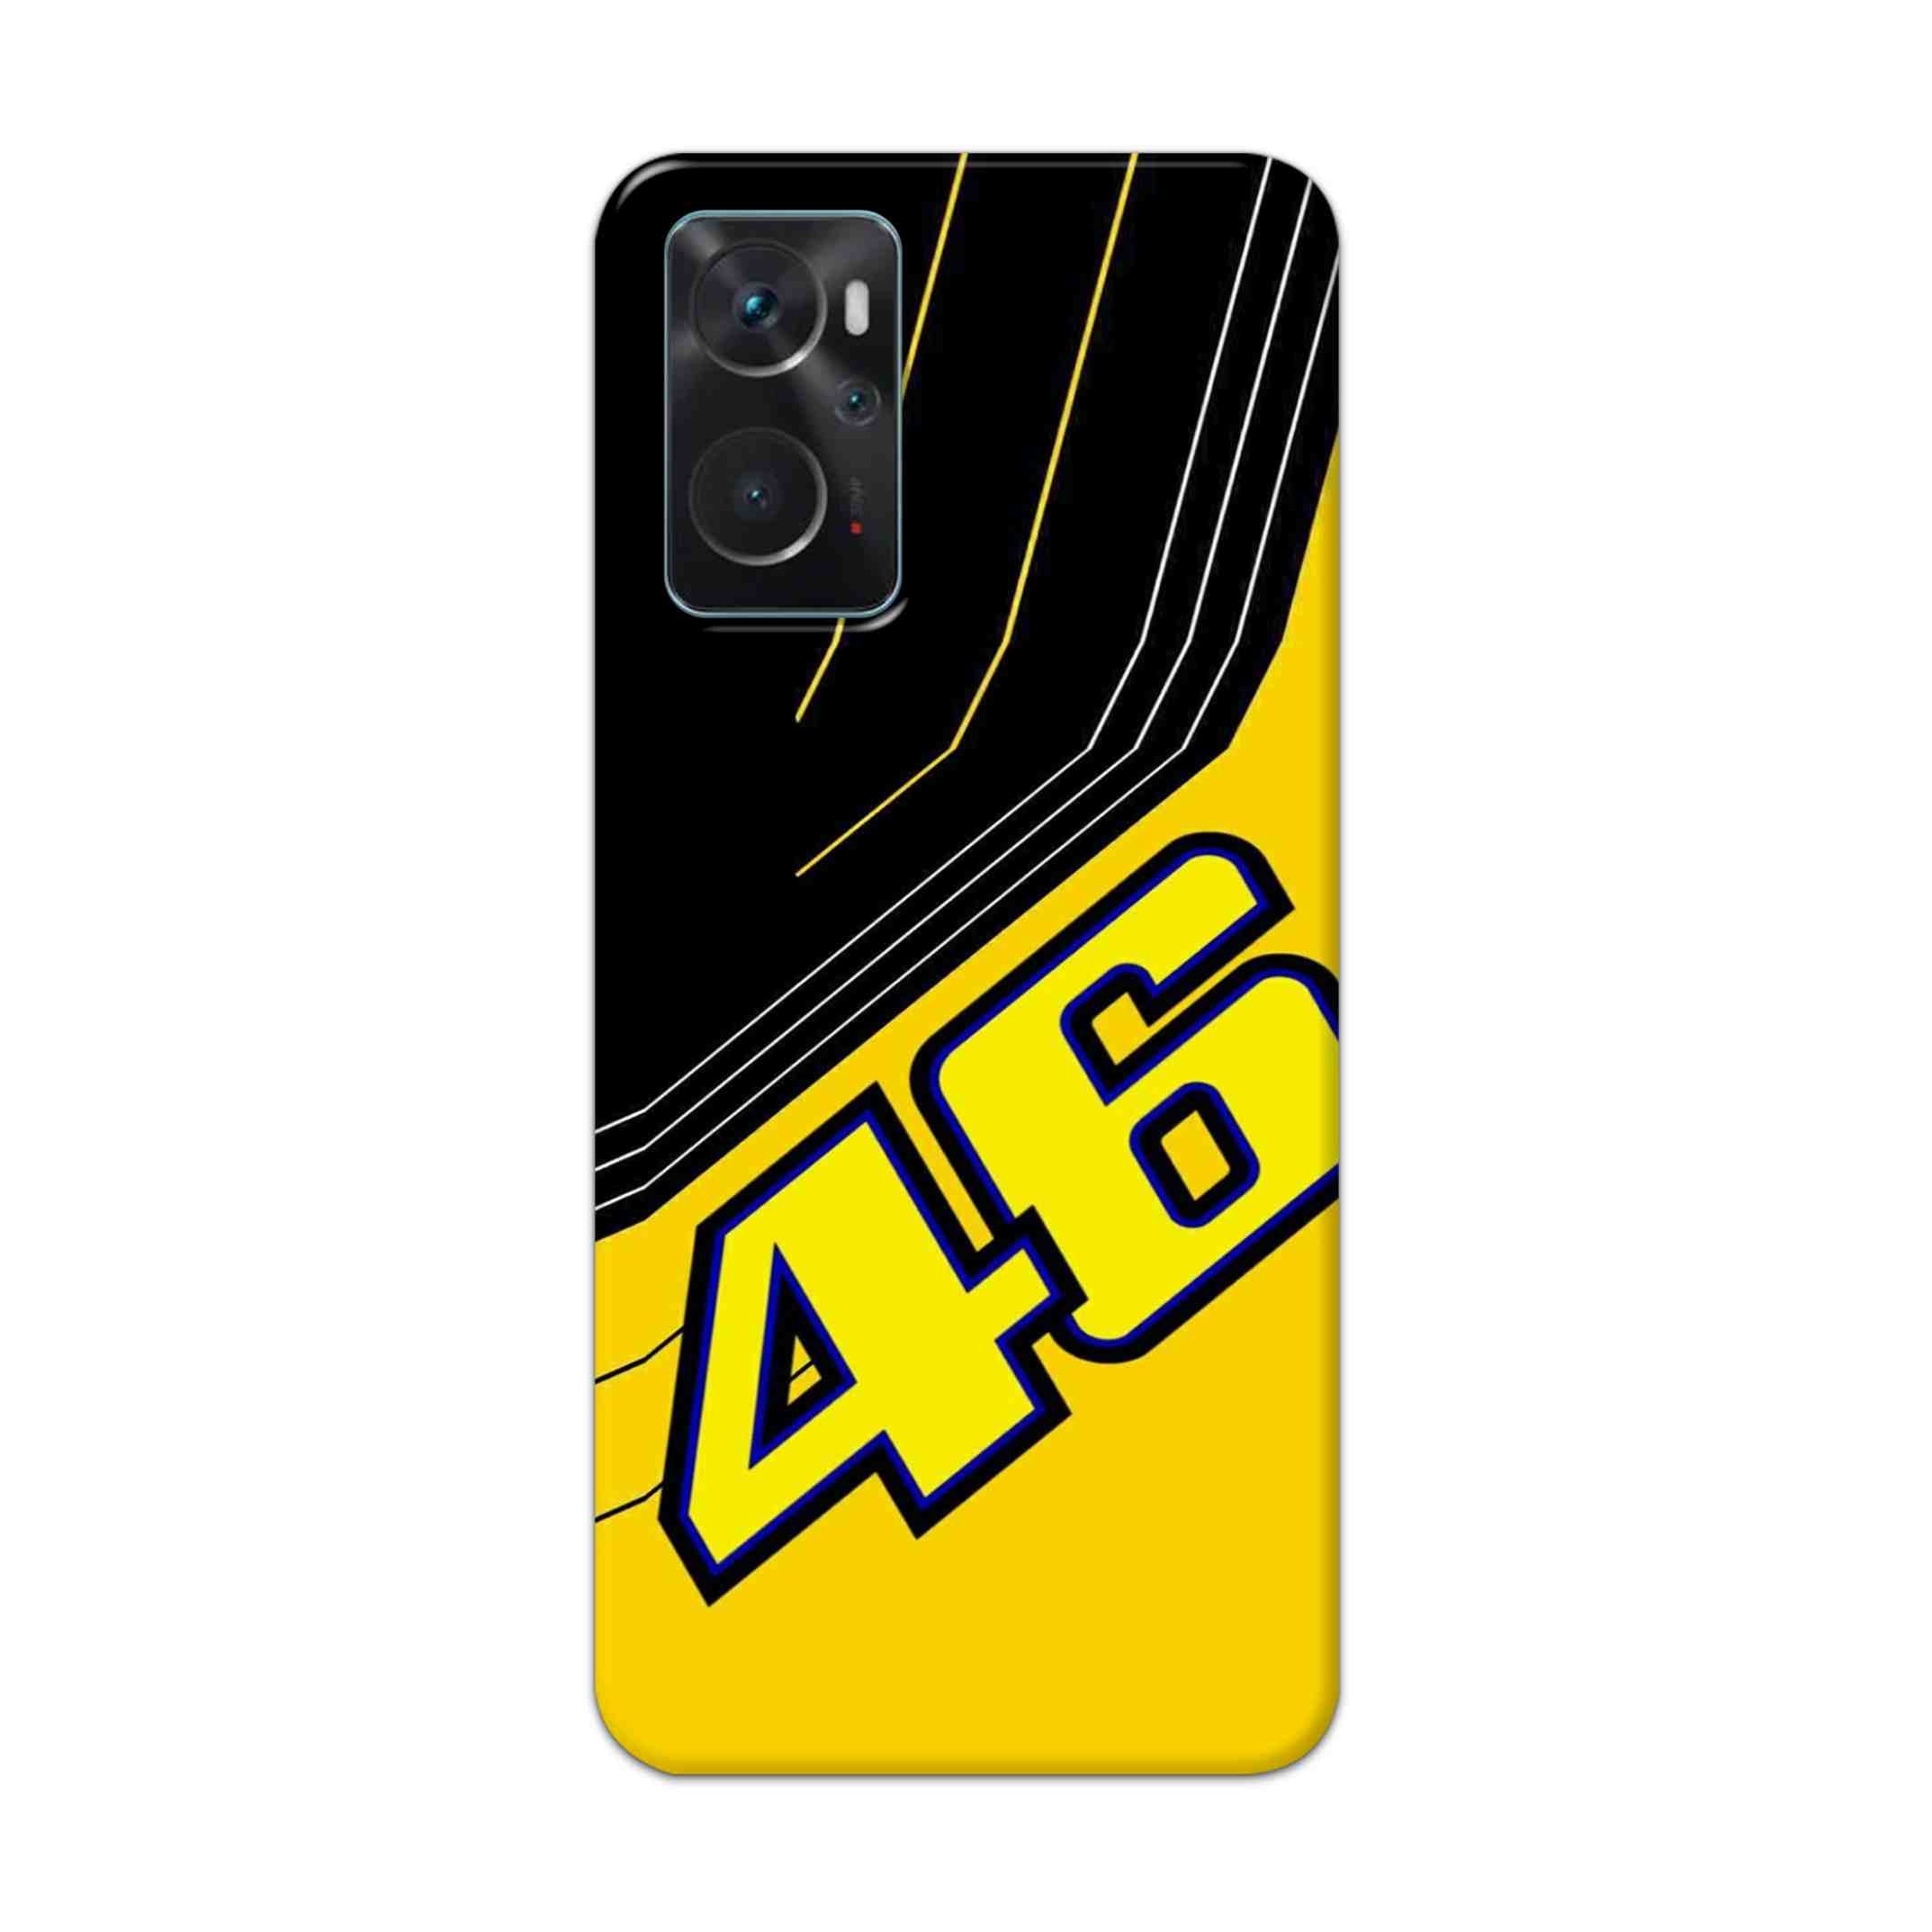 Buy 46 Hard Back Mobile Phone Case Cover For Oppo K10 Online